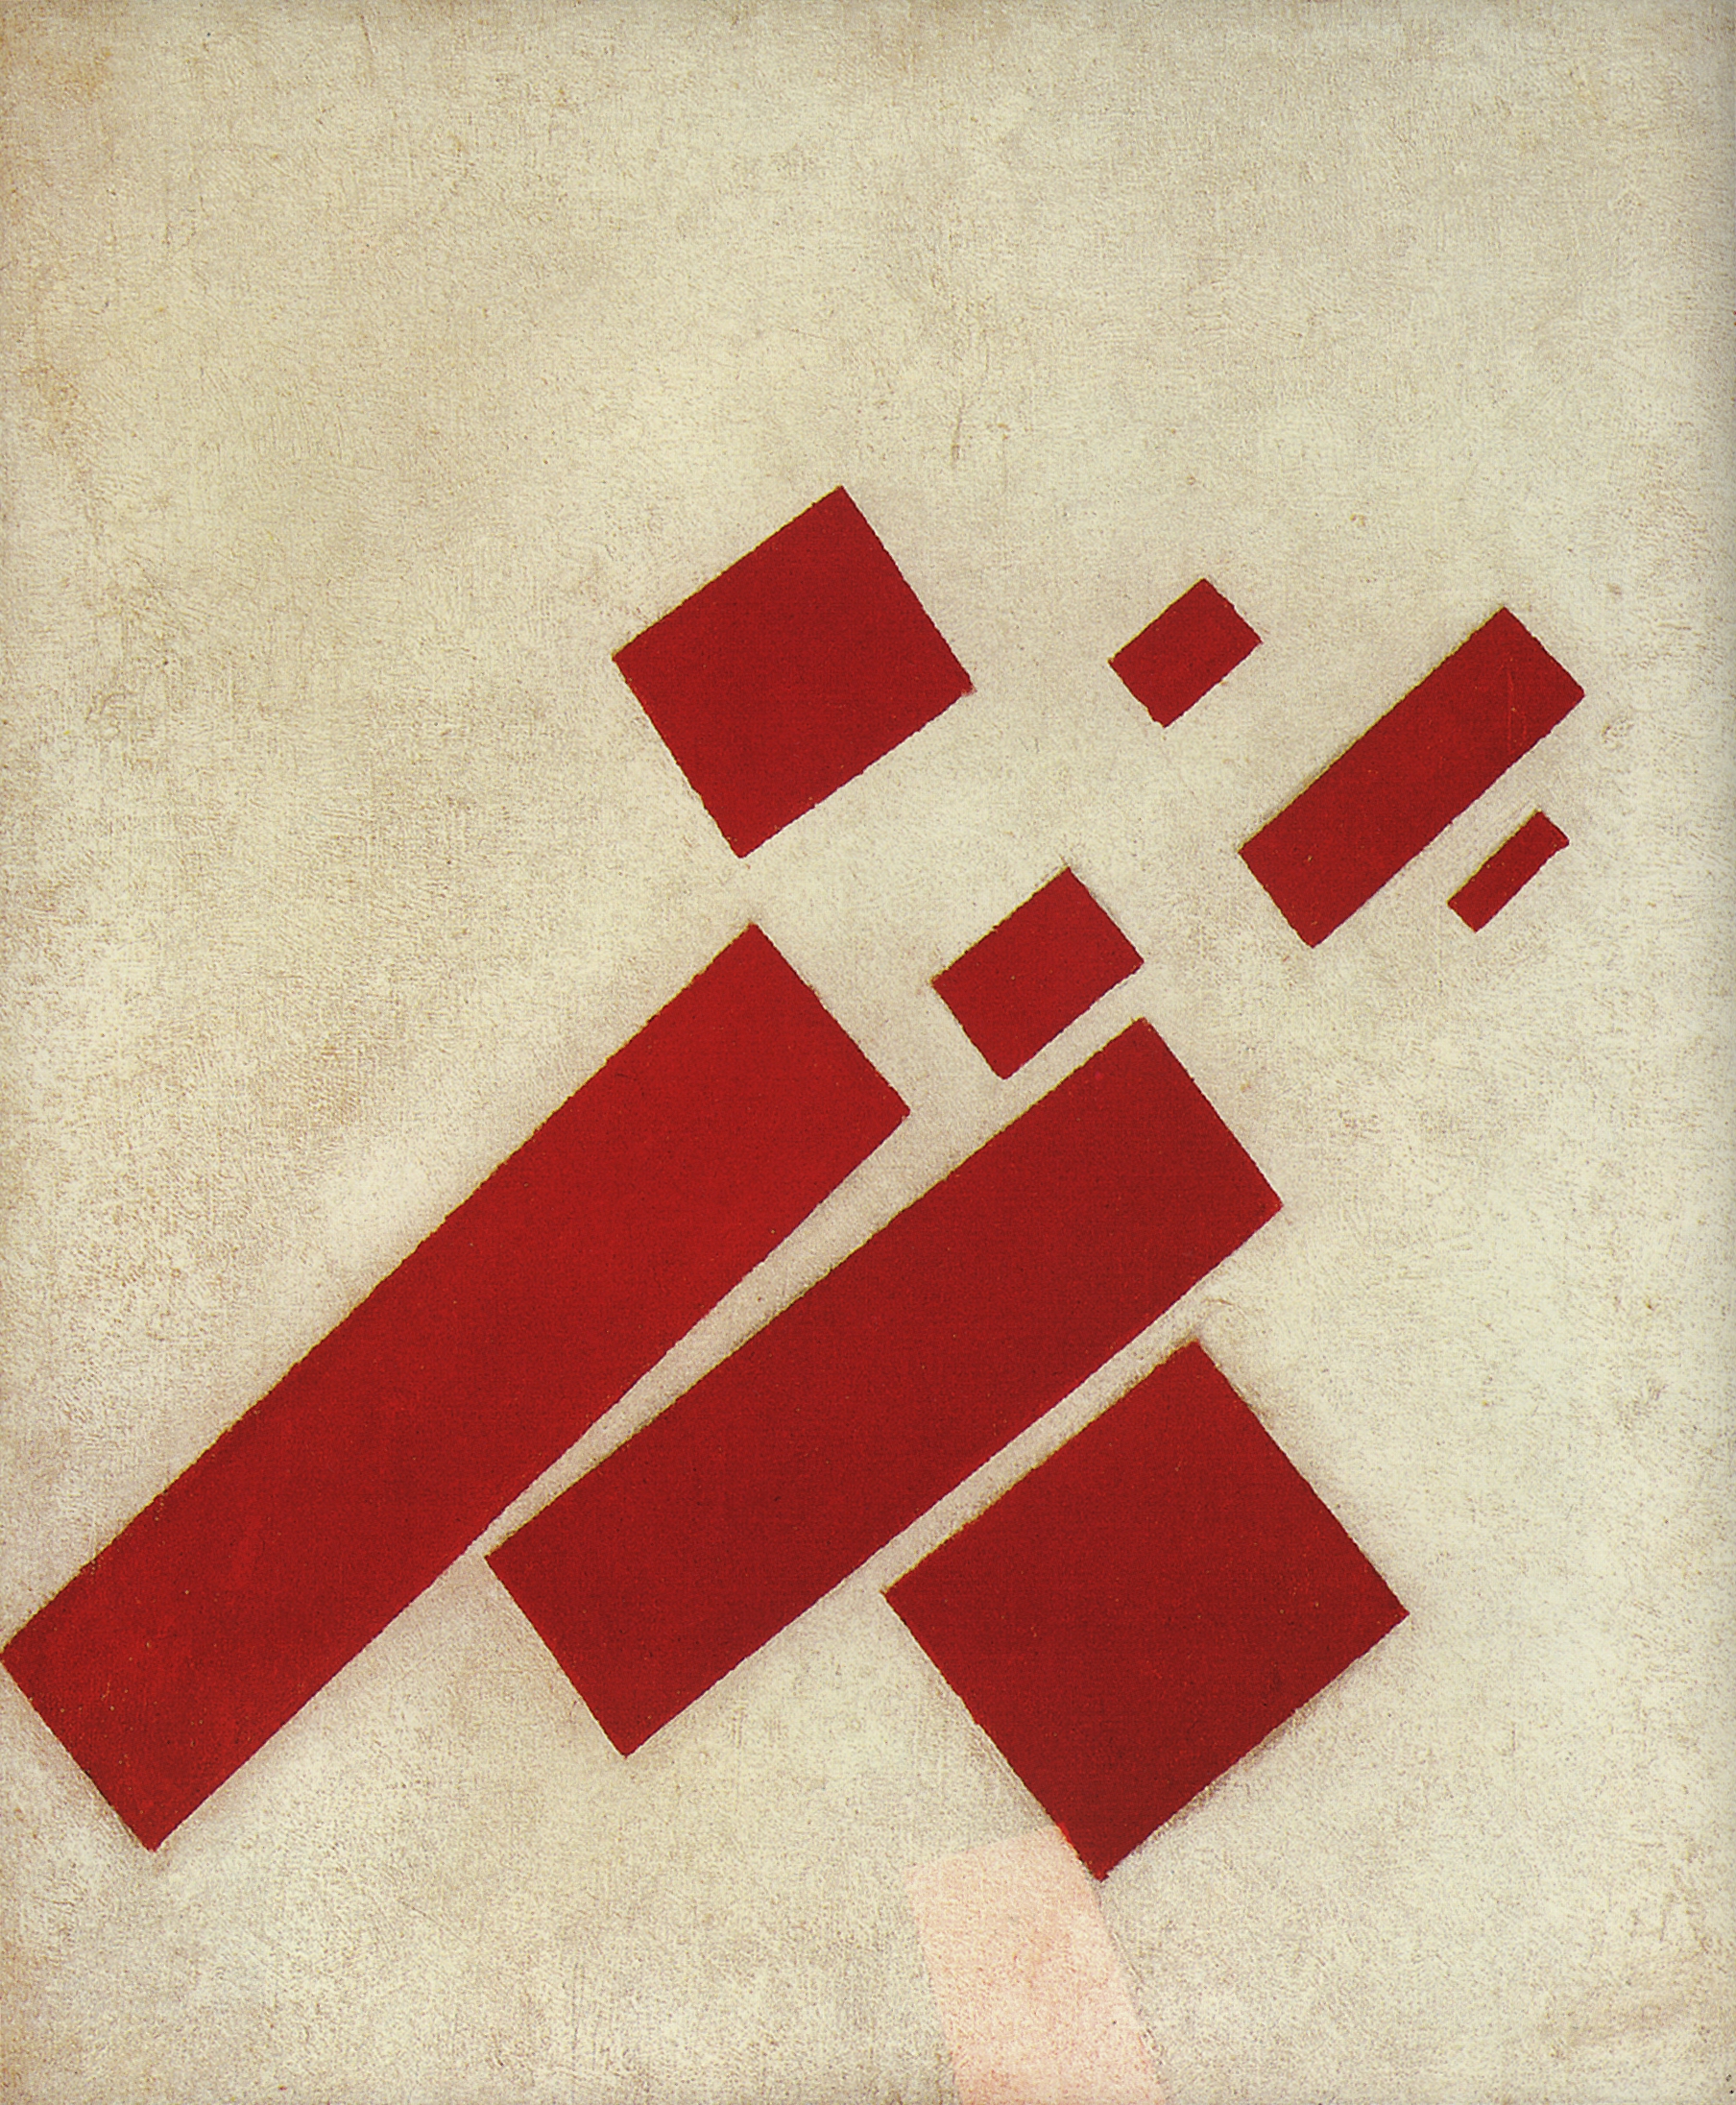 Малевич. Супрематизм (с восемью прямоугольниками). 1915